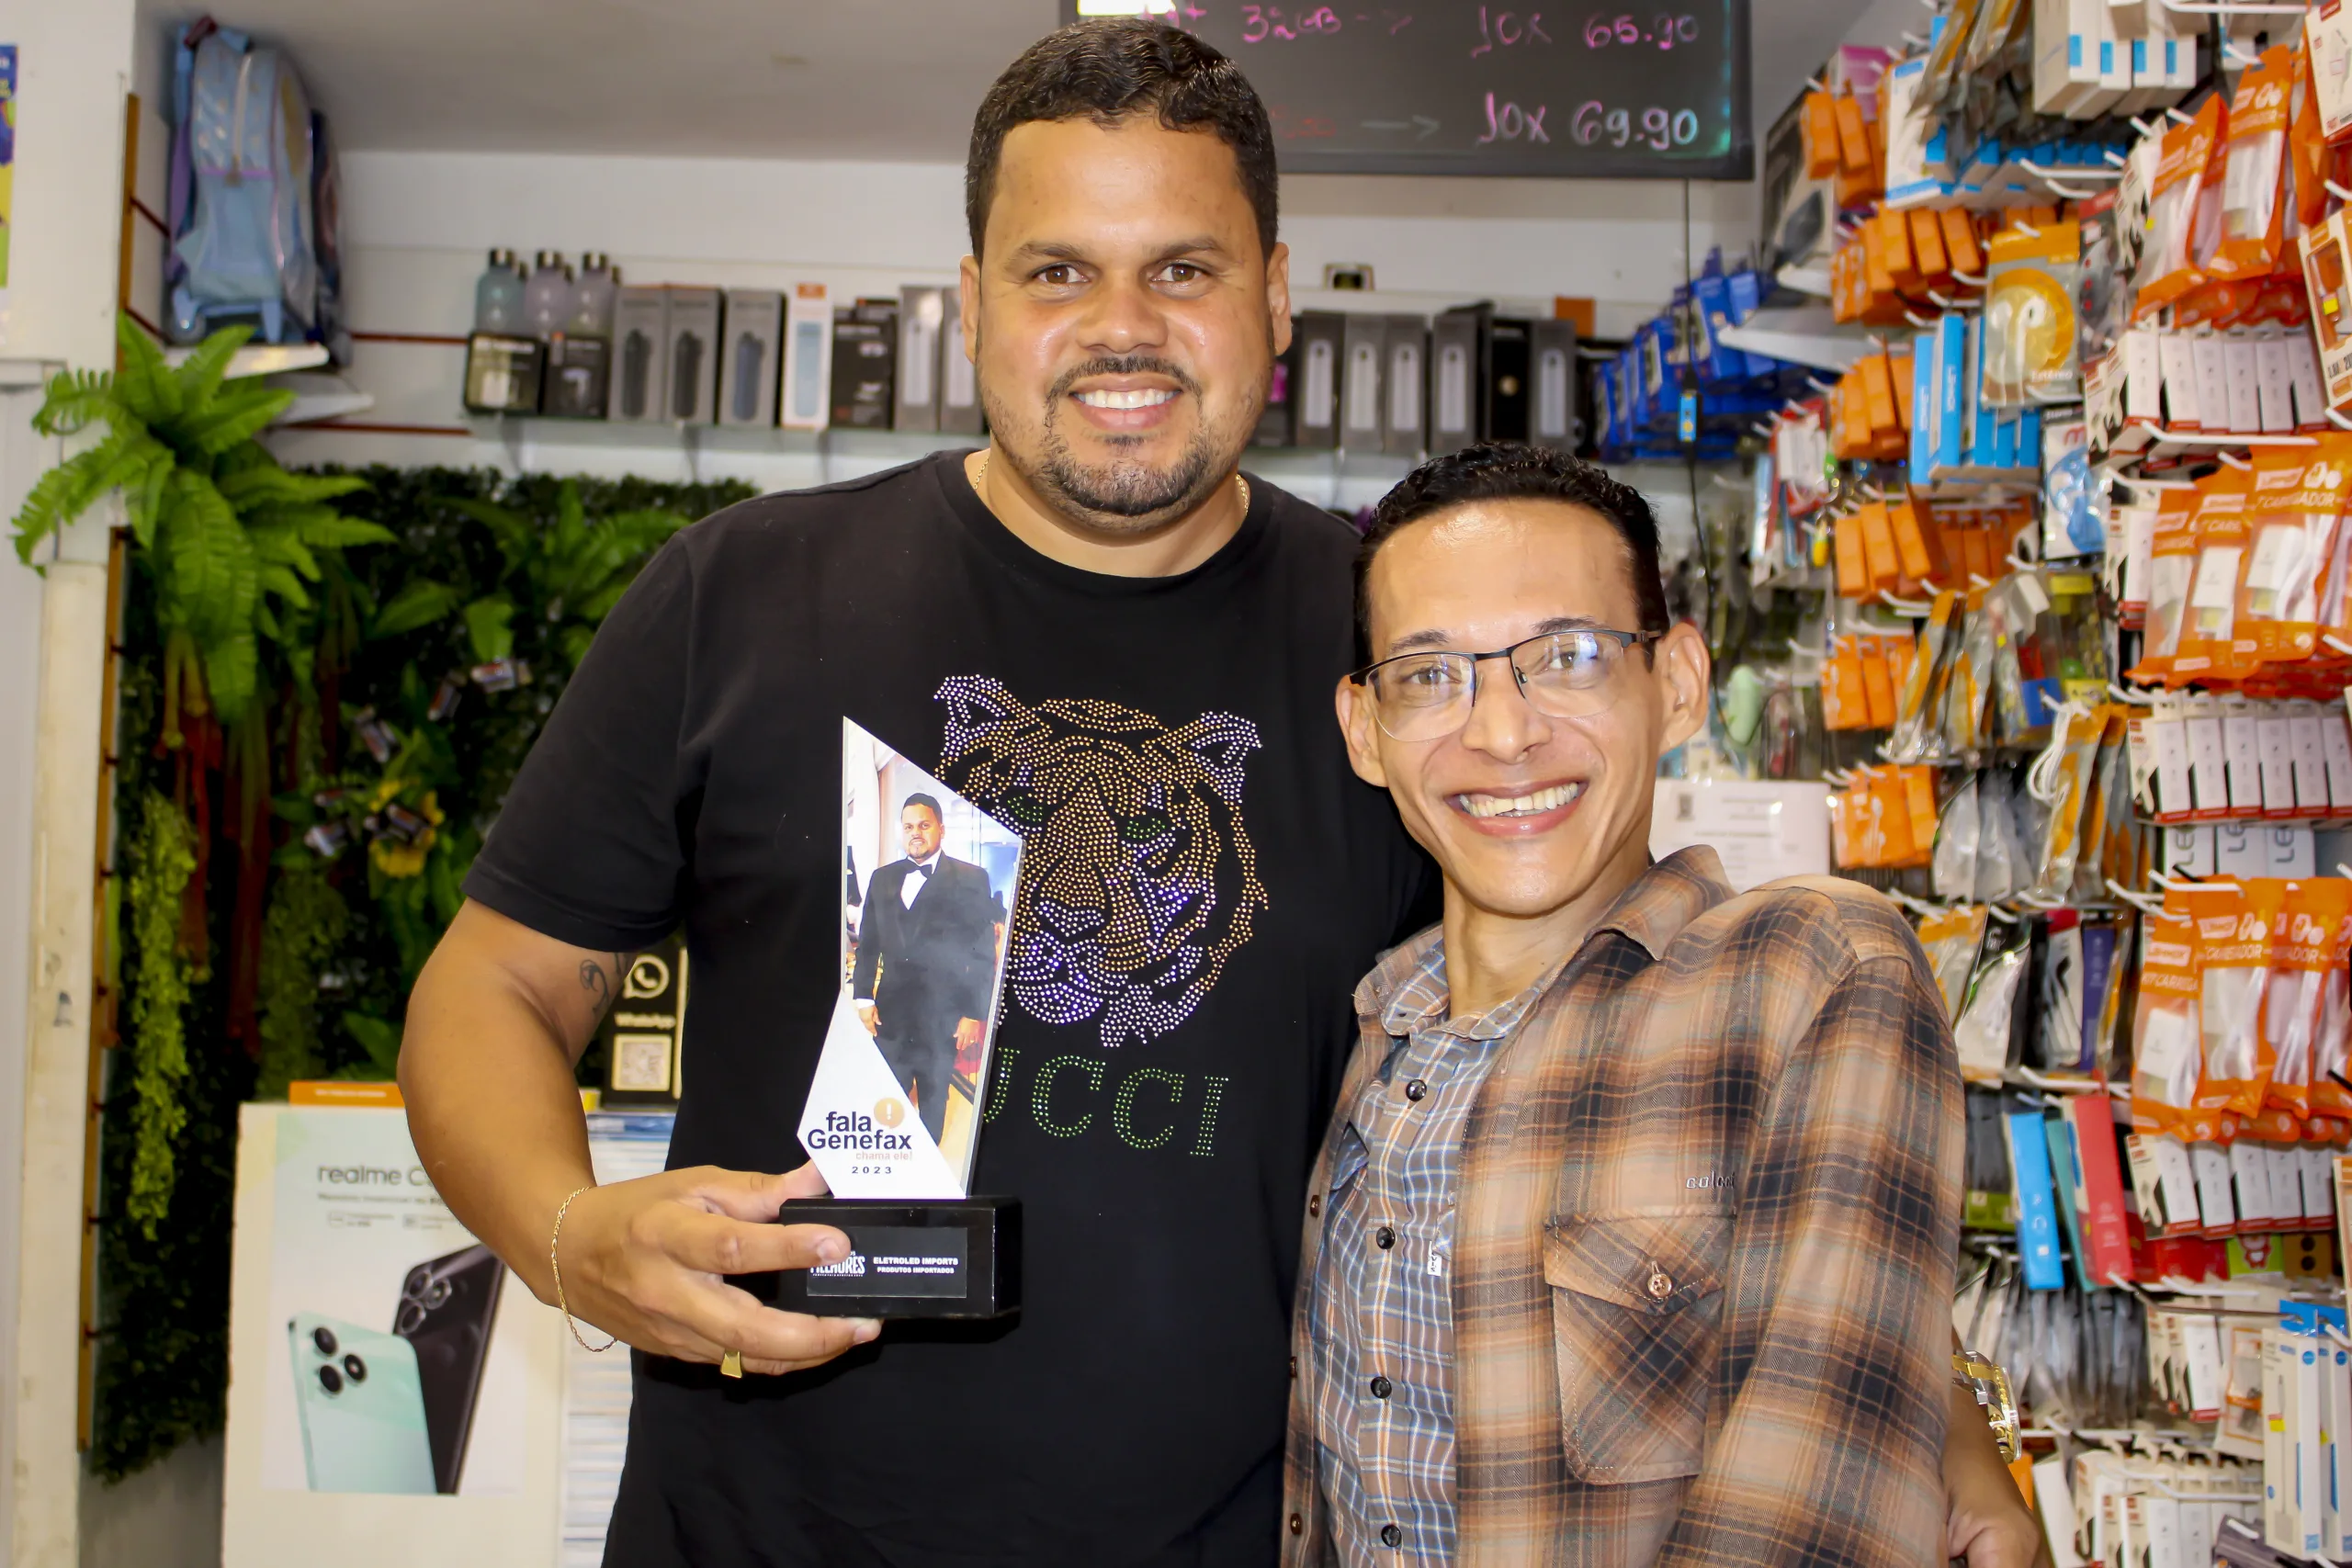 Jornalista Genefax entregou troféu a Victor das Neves, proprietário da Eletroled Imports. Foto: FALA GENEFAX